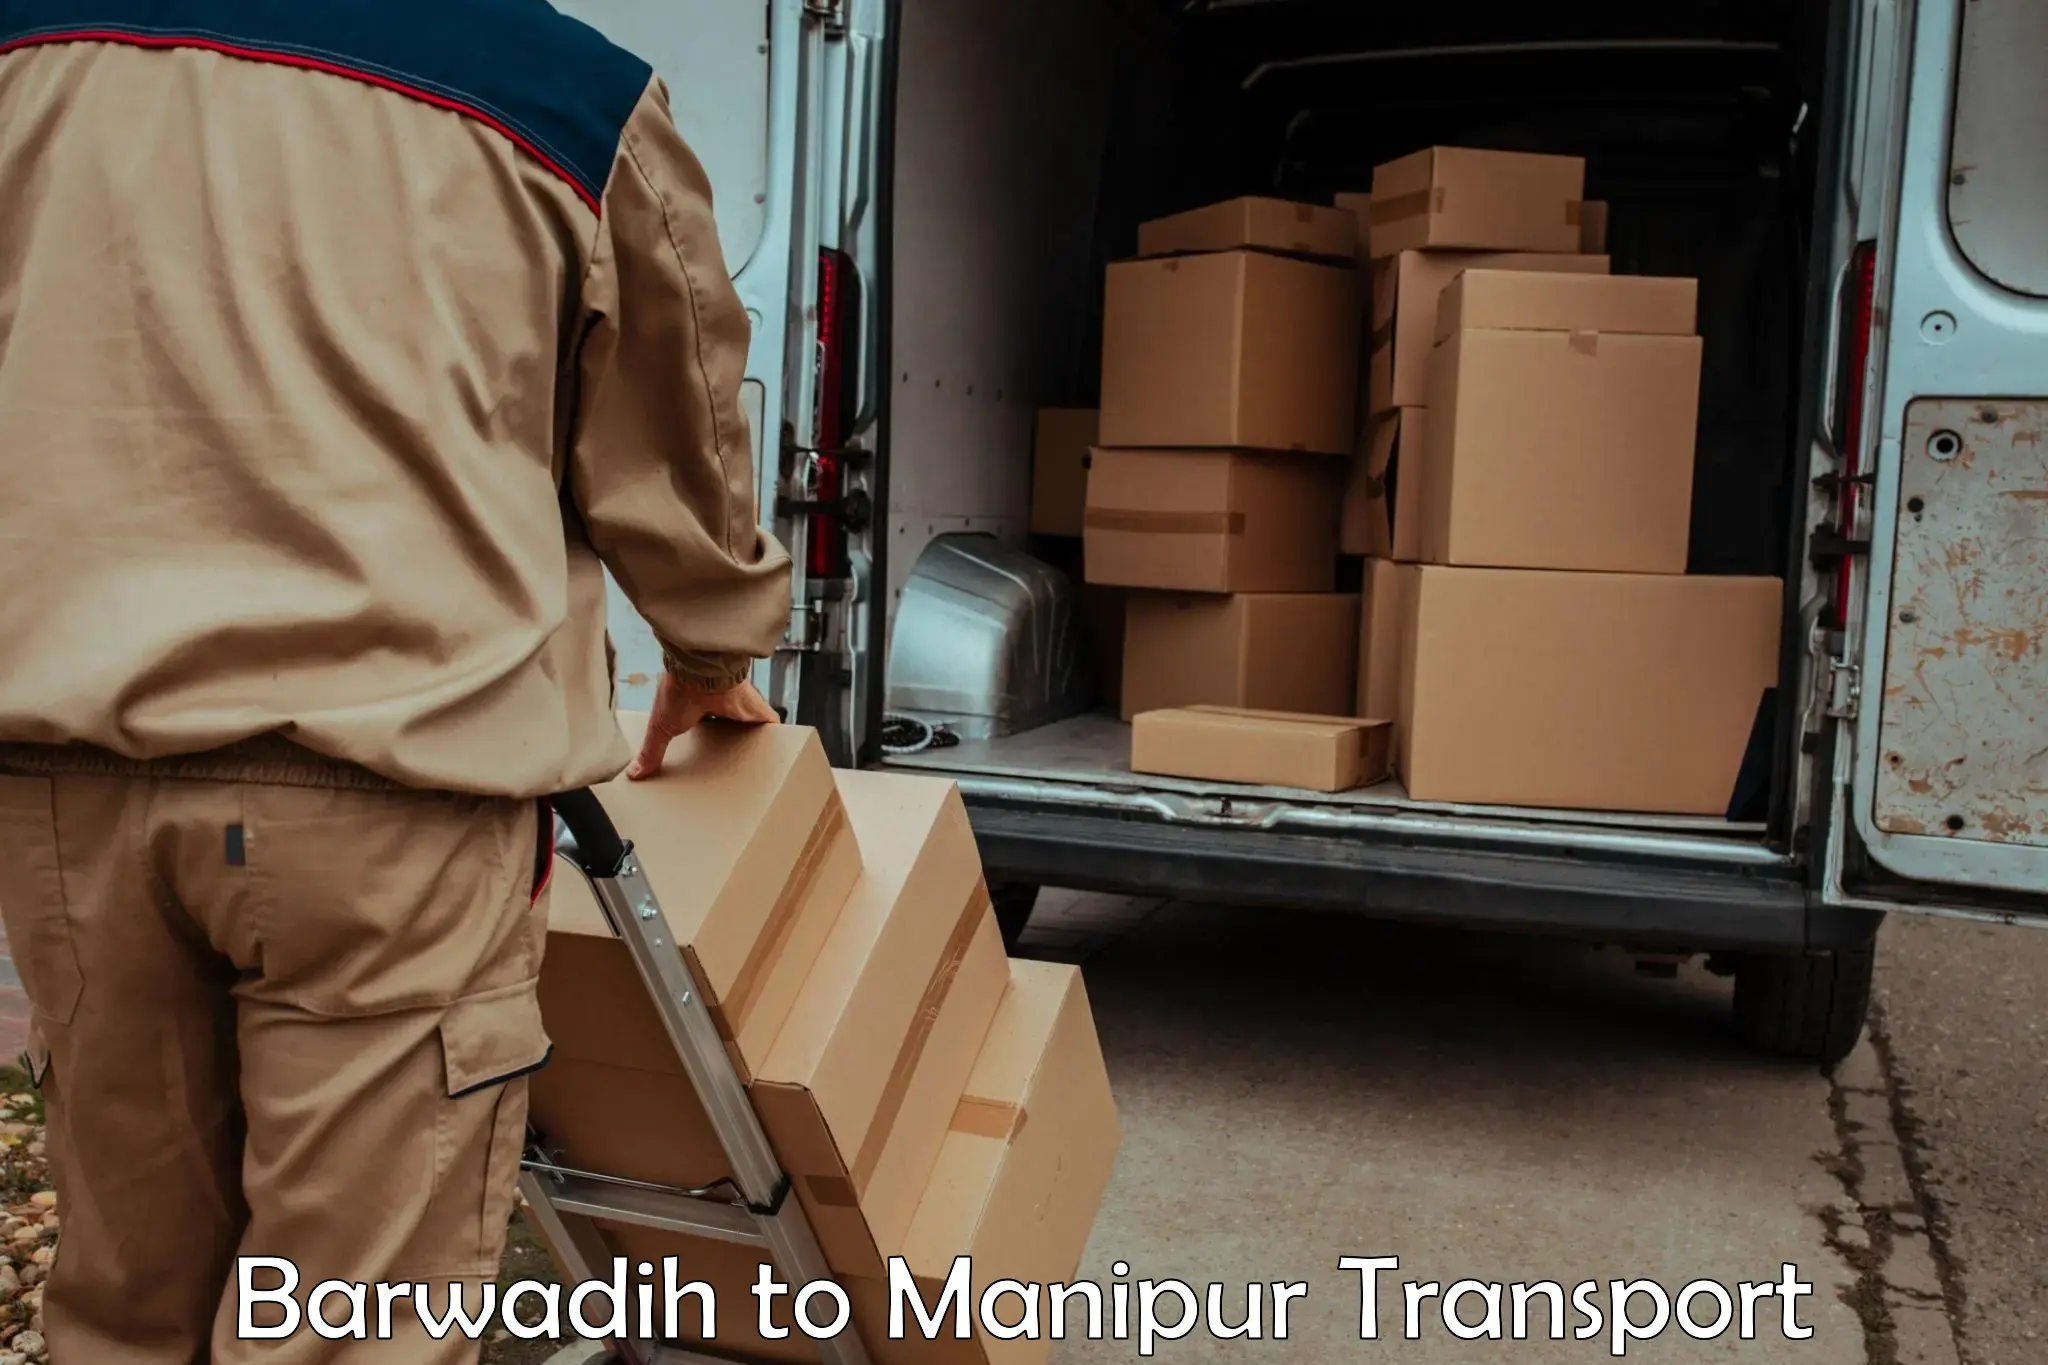 Road transport online services Barwadih to Churachandpur